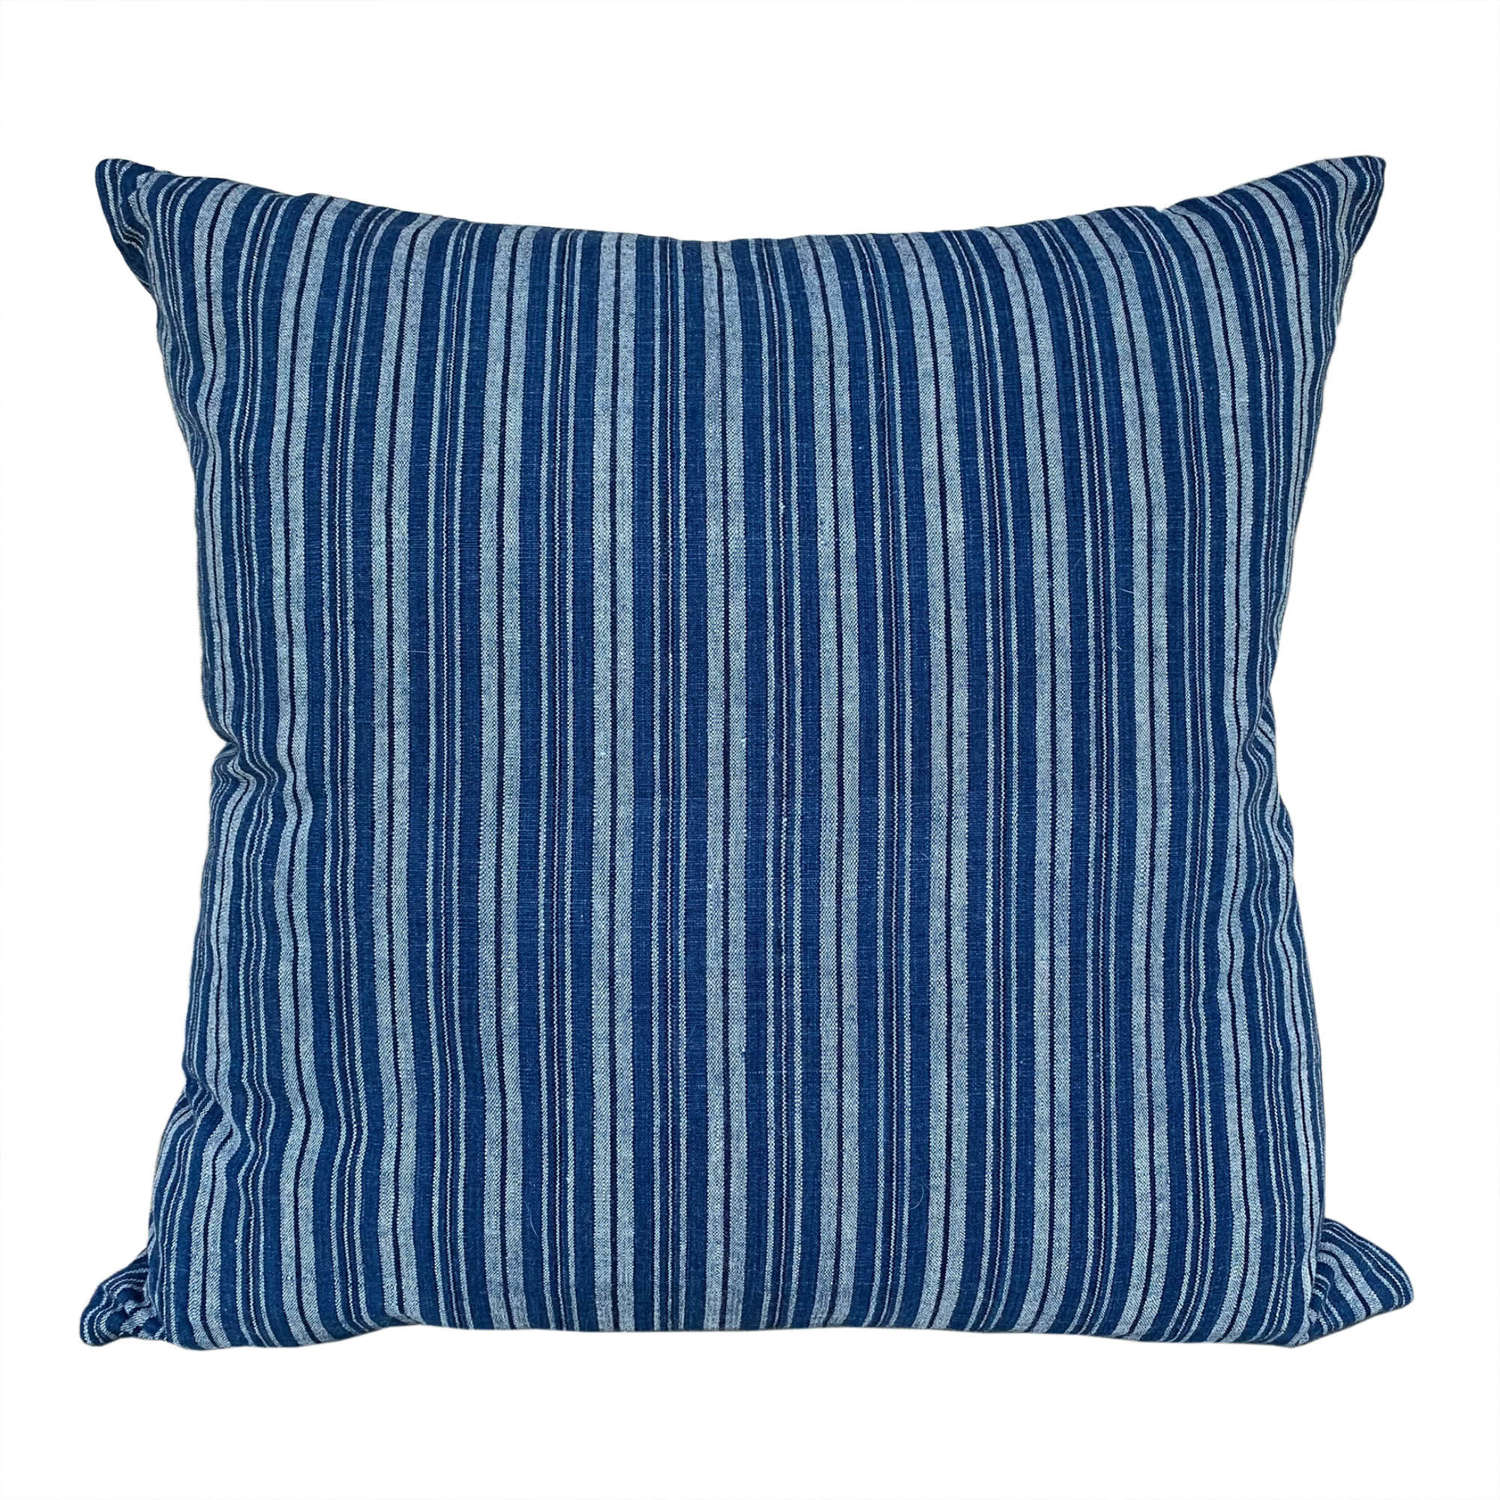 Songjiang cushions, indigo stripe